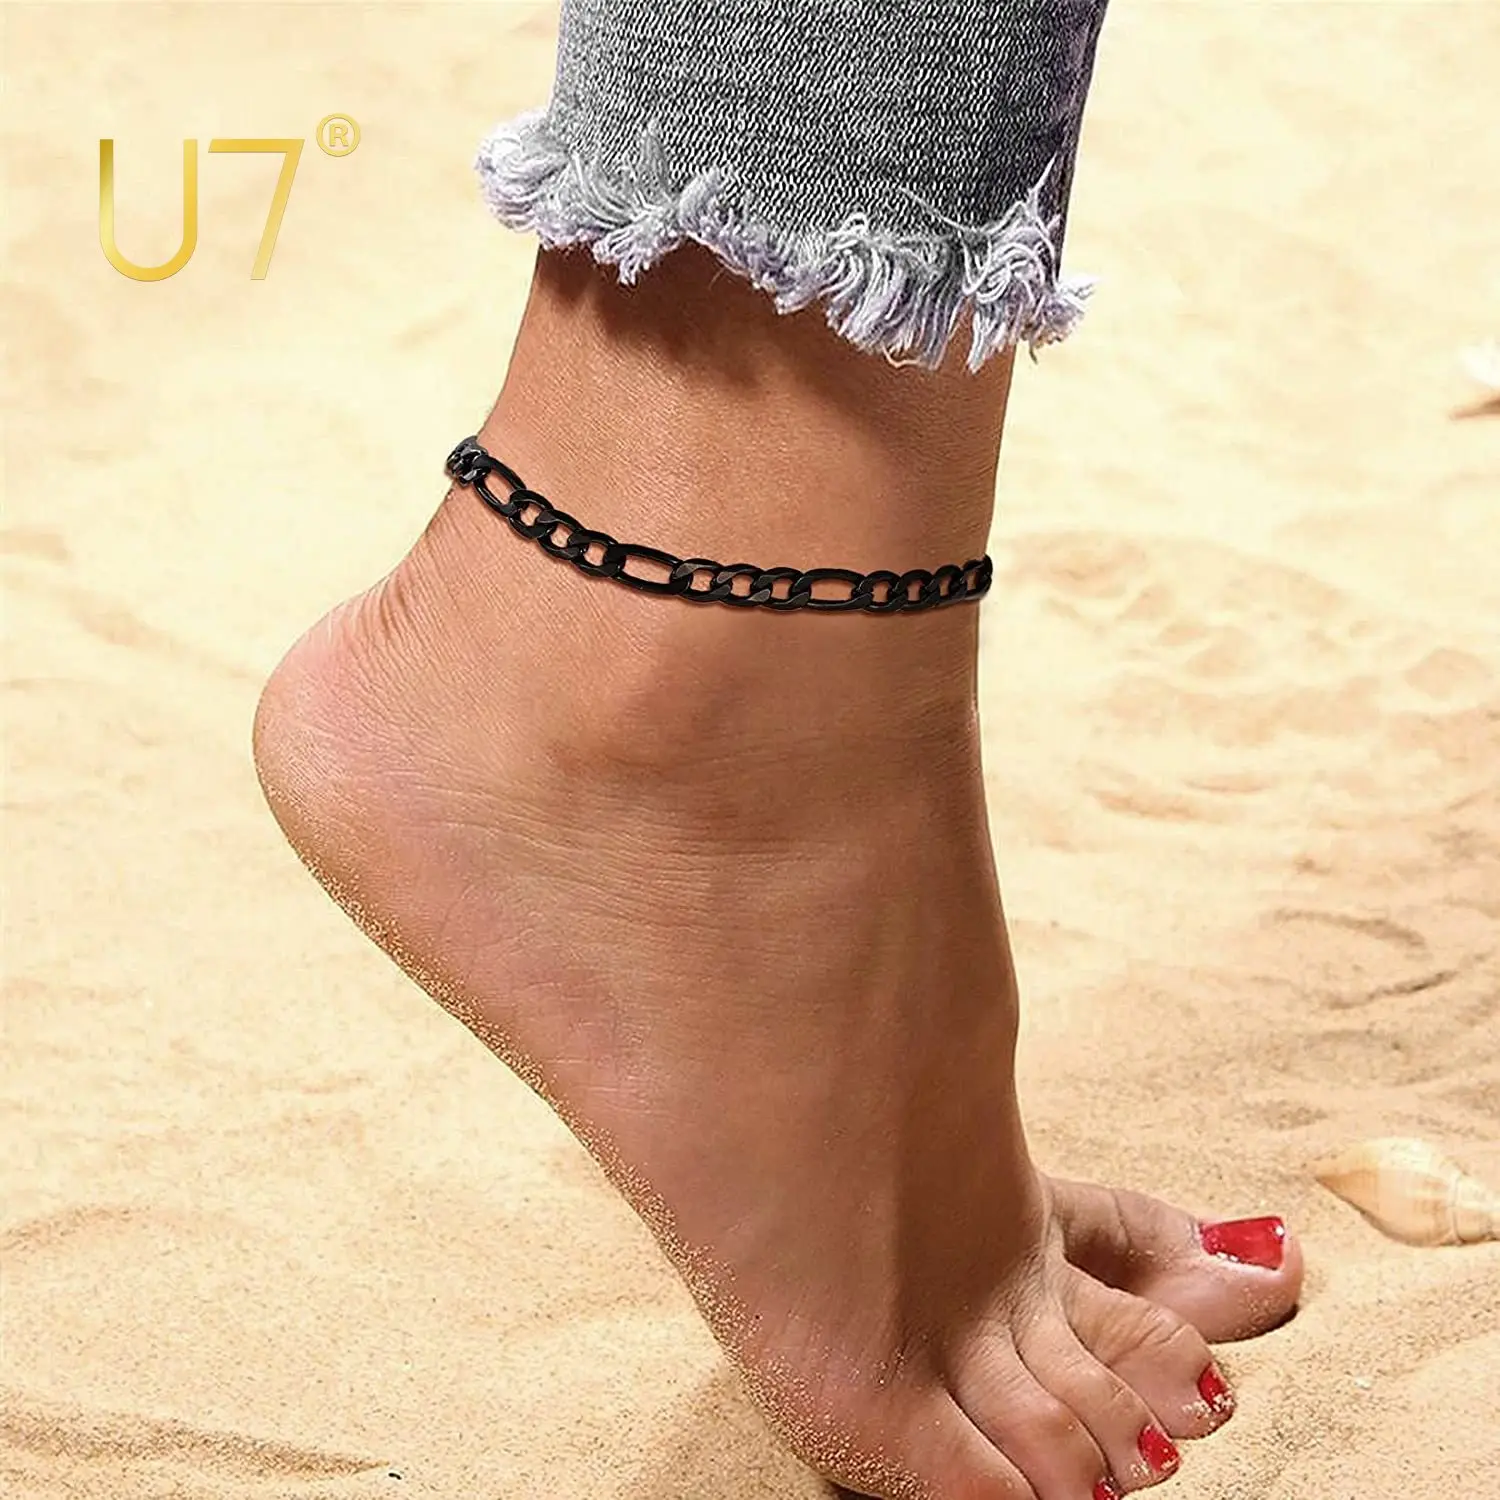 

U7 Figaro Chain Anklets for Women Black Color 3mm Wide Polished Resizable Link Ankle Bracelet Length 22cm to 27cm